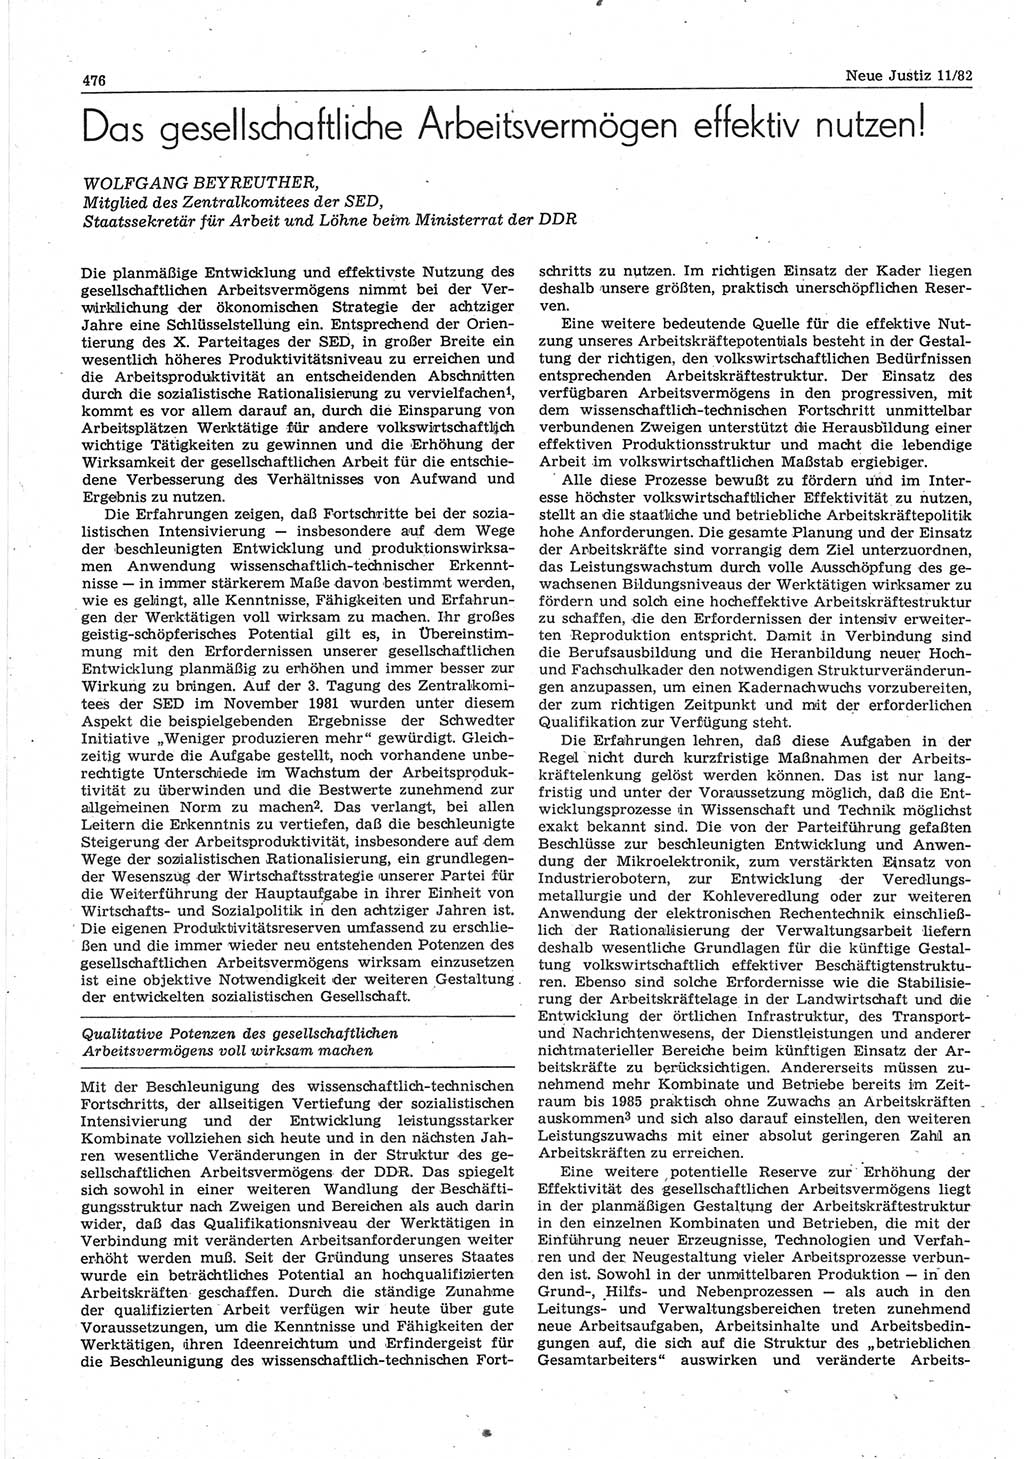 Neue Justiz (NJ), Zeitschrift für sozialistisches Recht und Gesetzlichkeit [Deutsche Demokratische Republik (DDR)], 36. Jahrgang 1982, Seite 476 (NJ DDR 1982, S. 476)